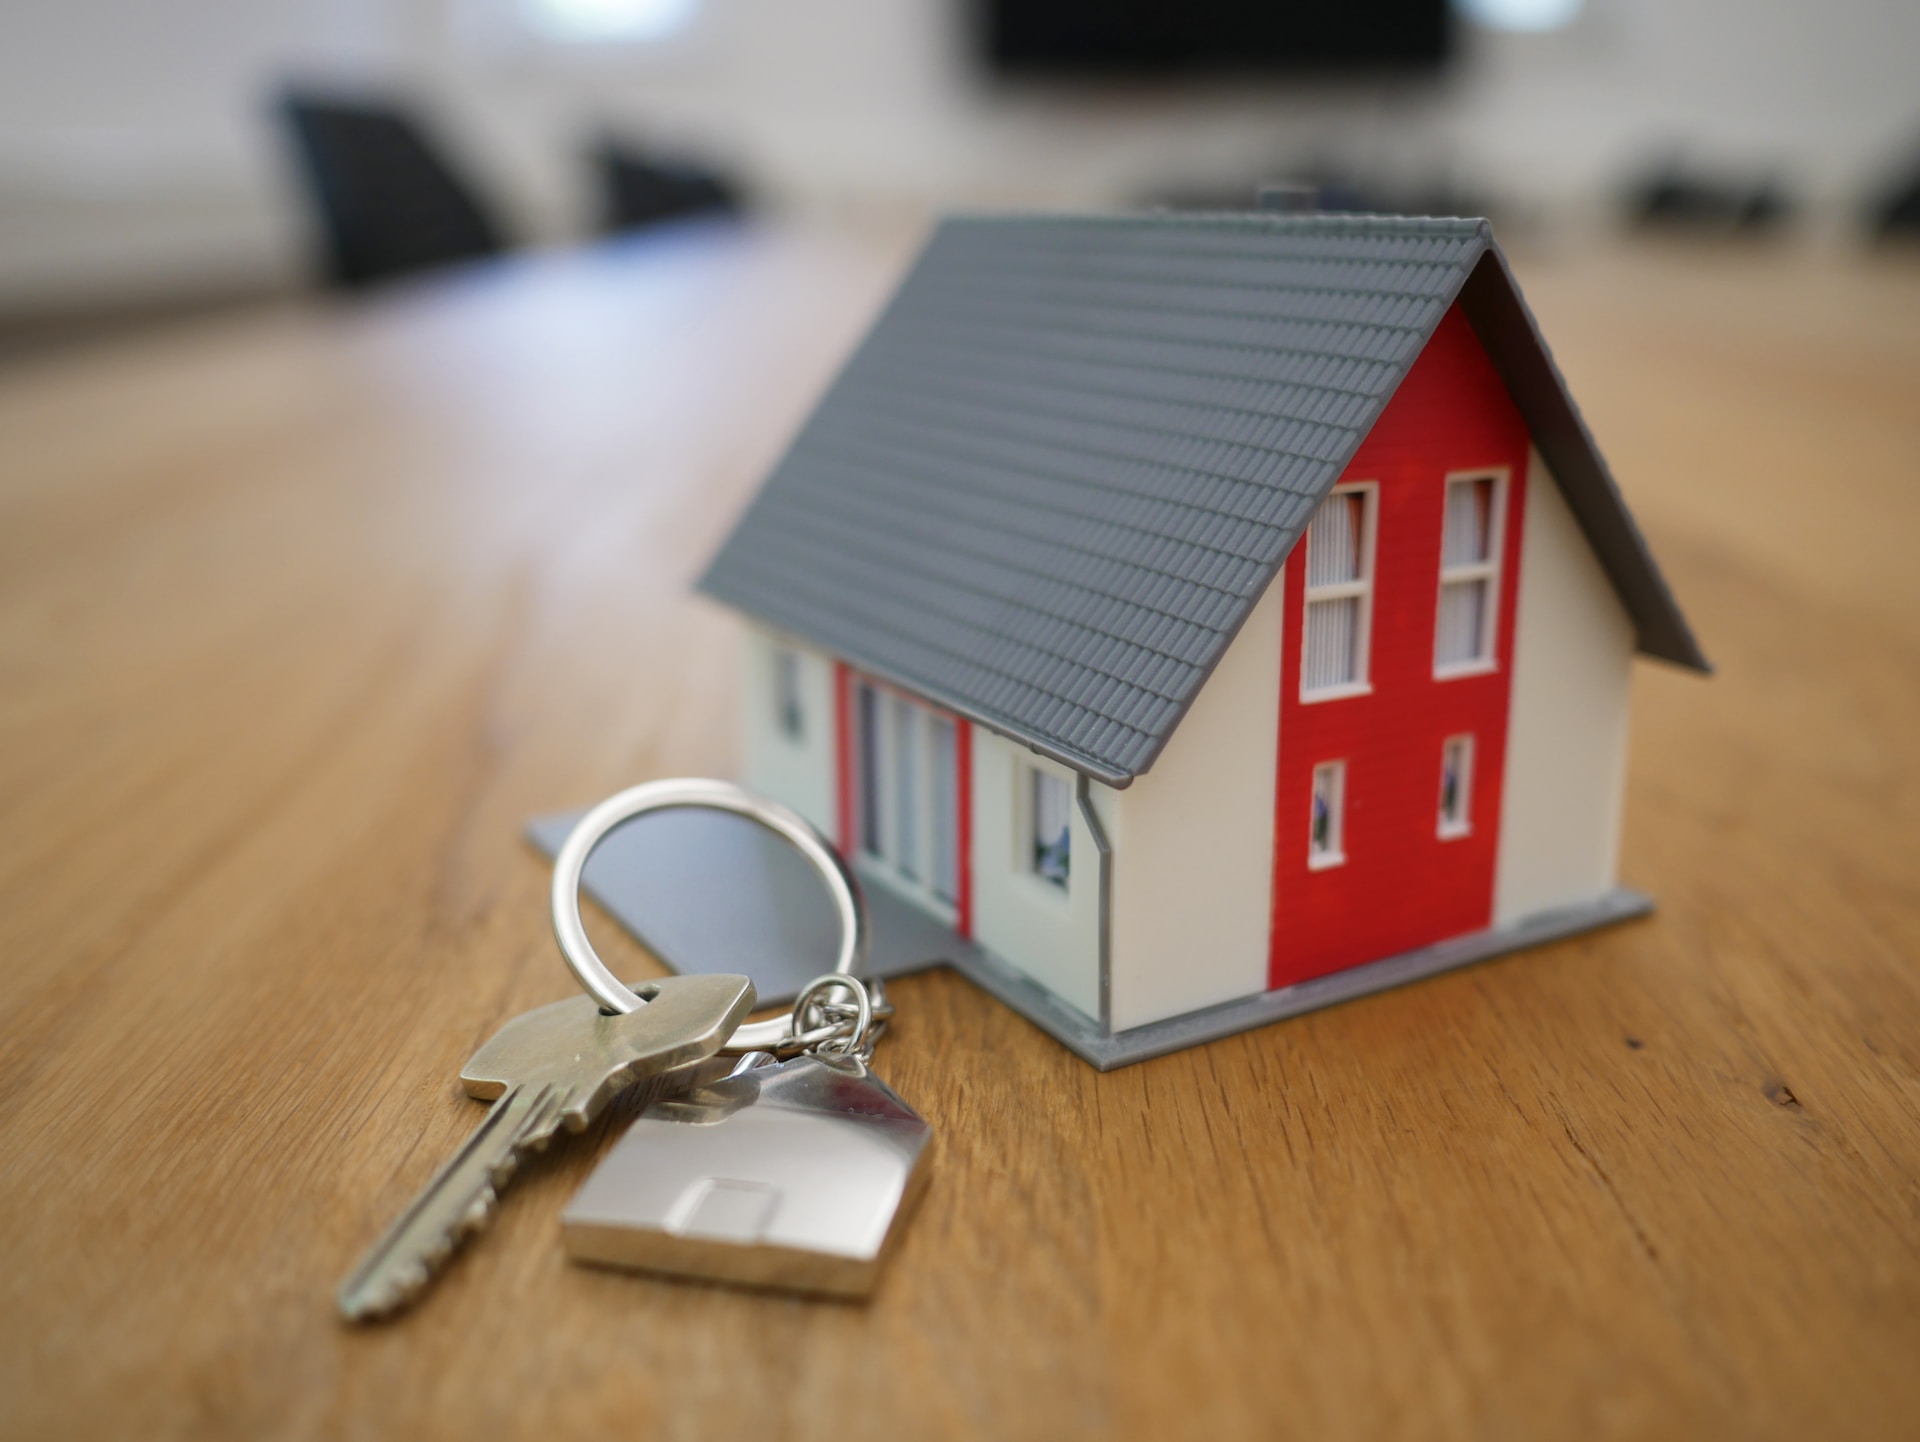 keys and tiny model house on desk